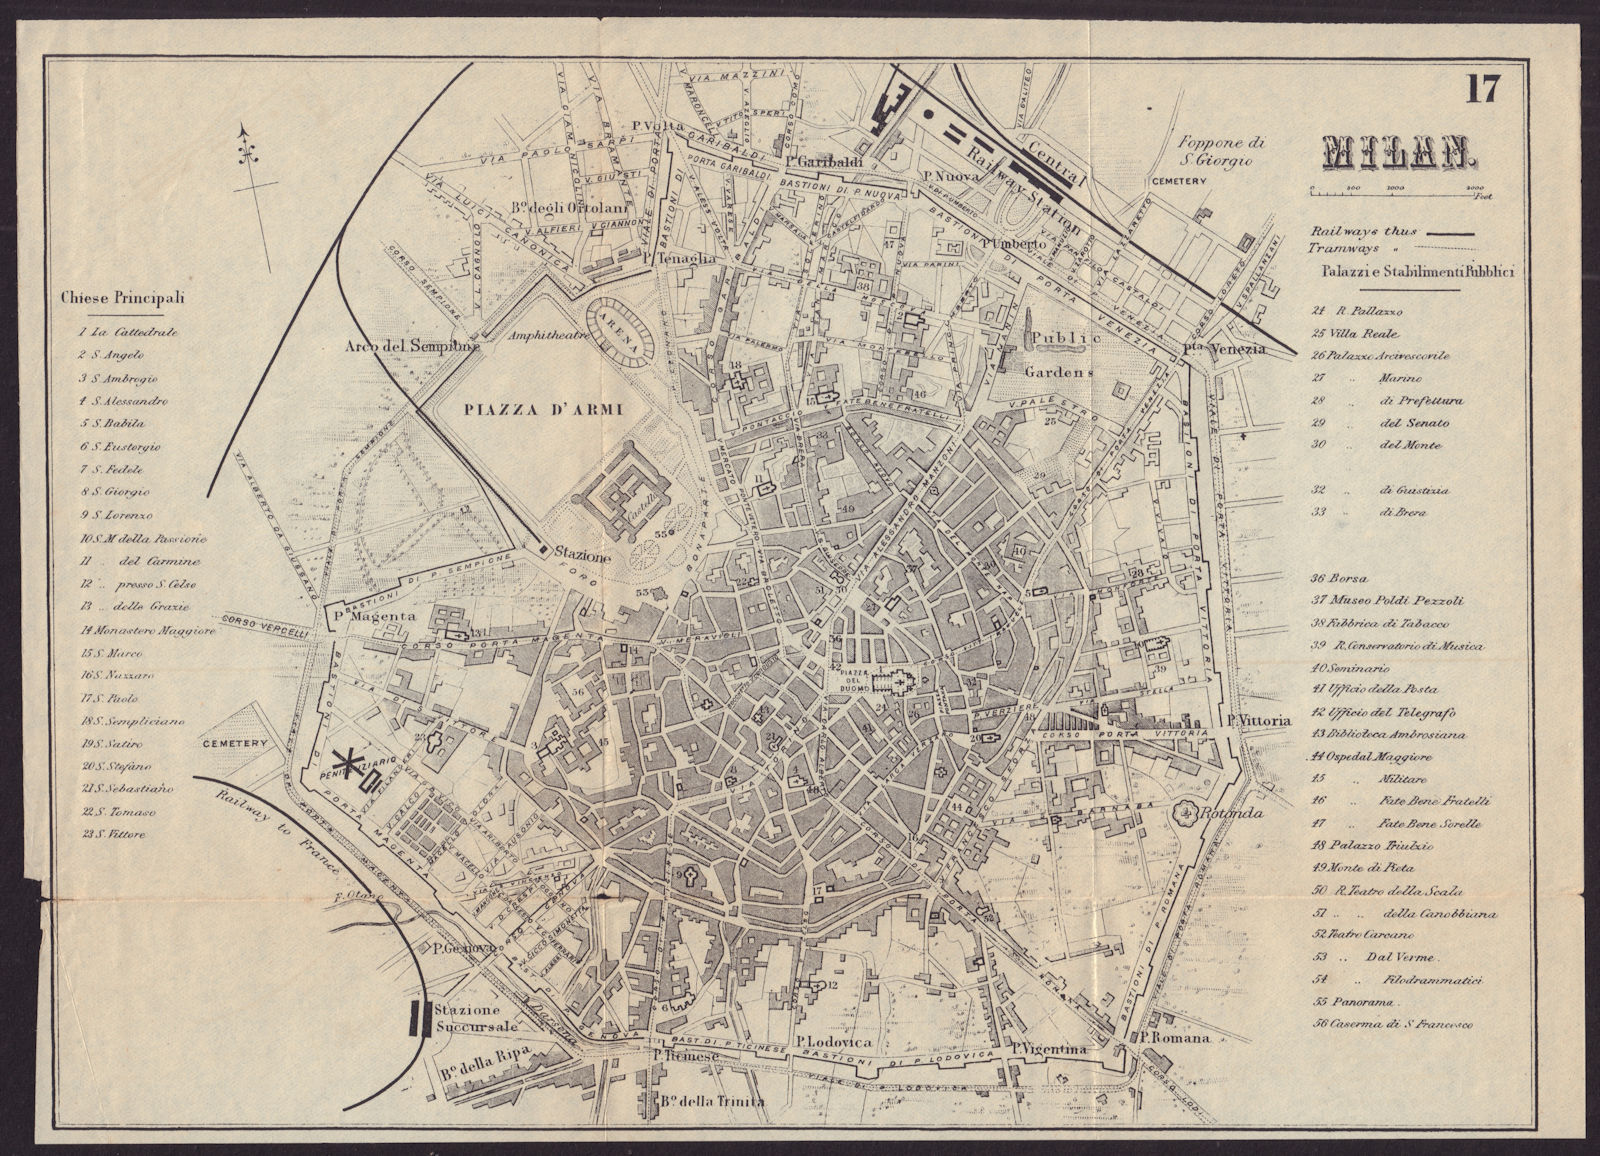 MILAN MILANO antique town plan city map. Italy. BRADSHAW c1899 old